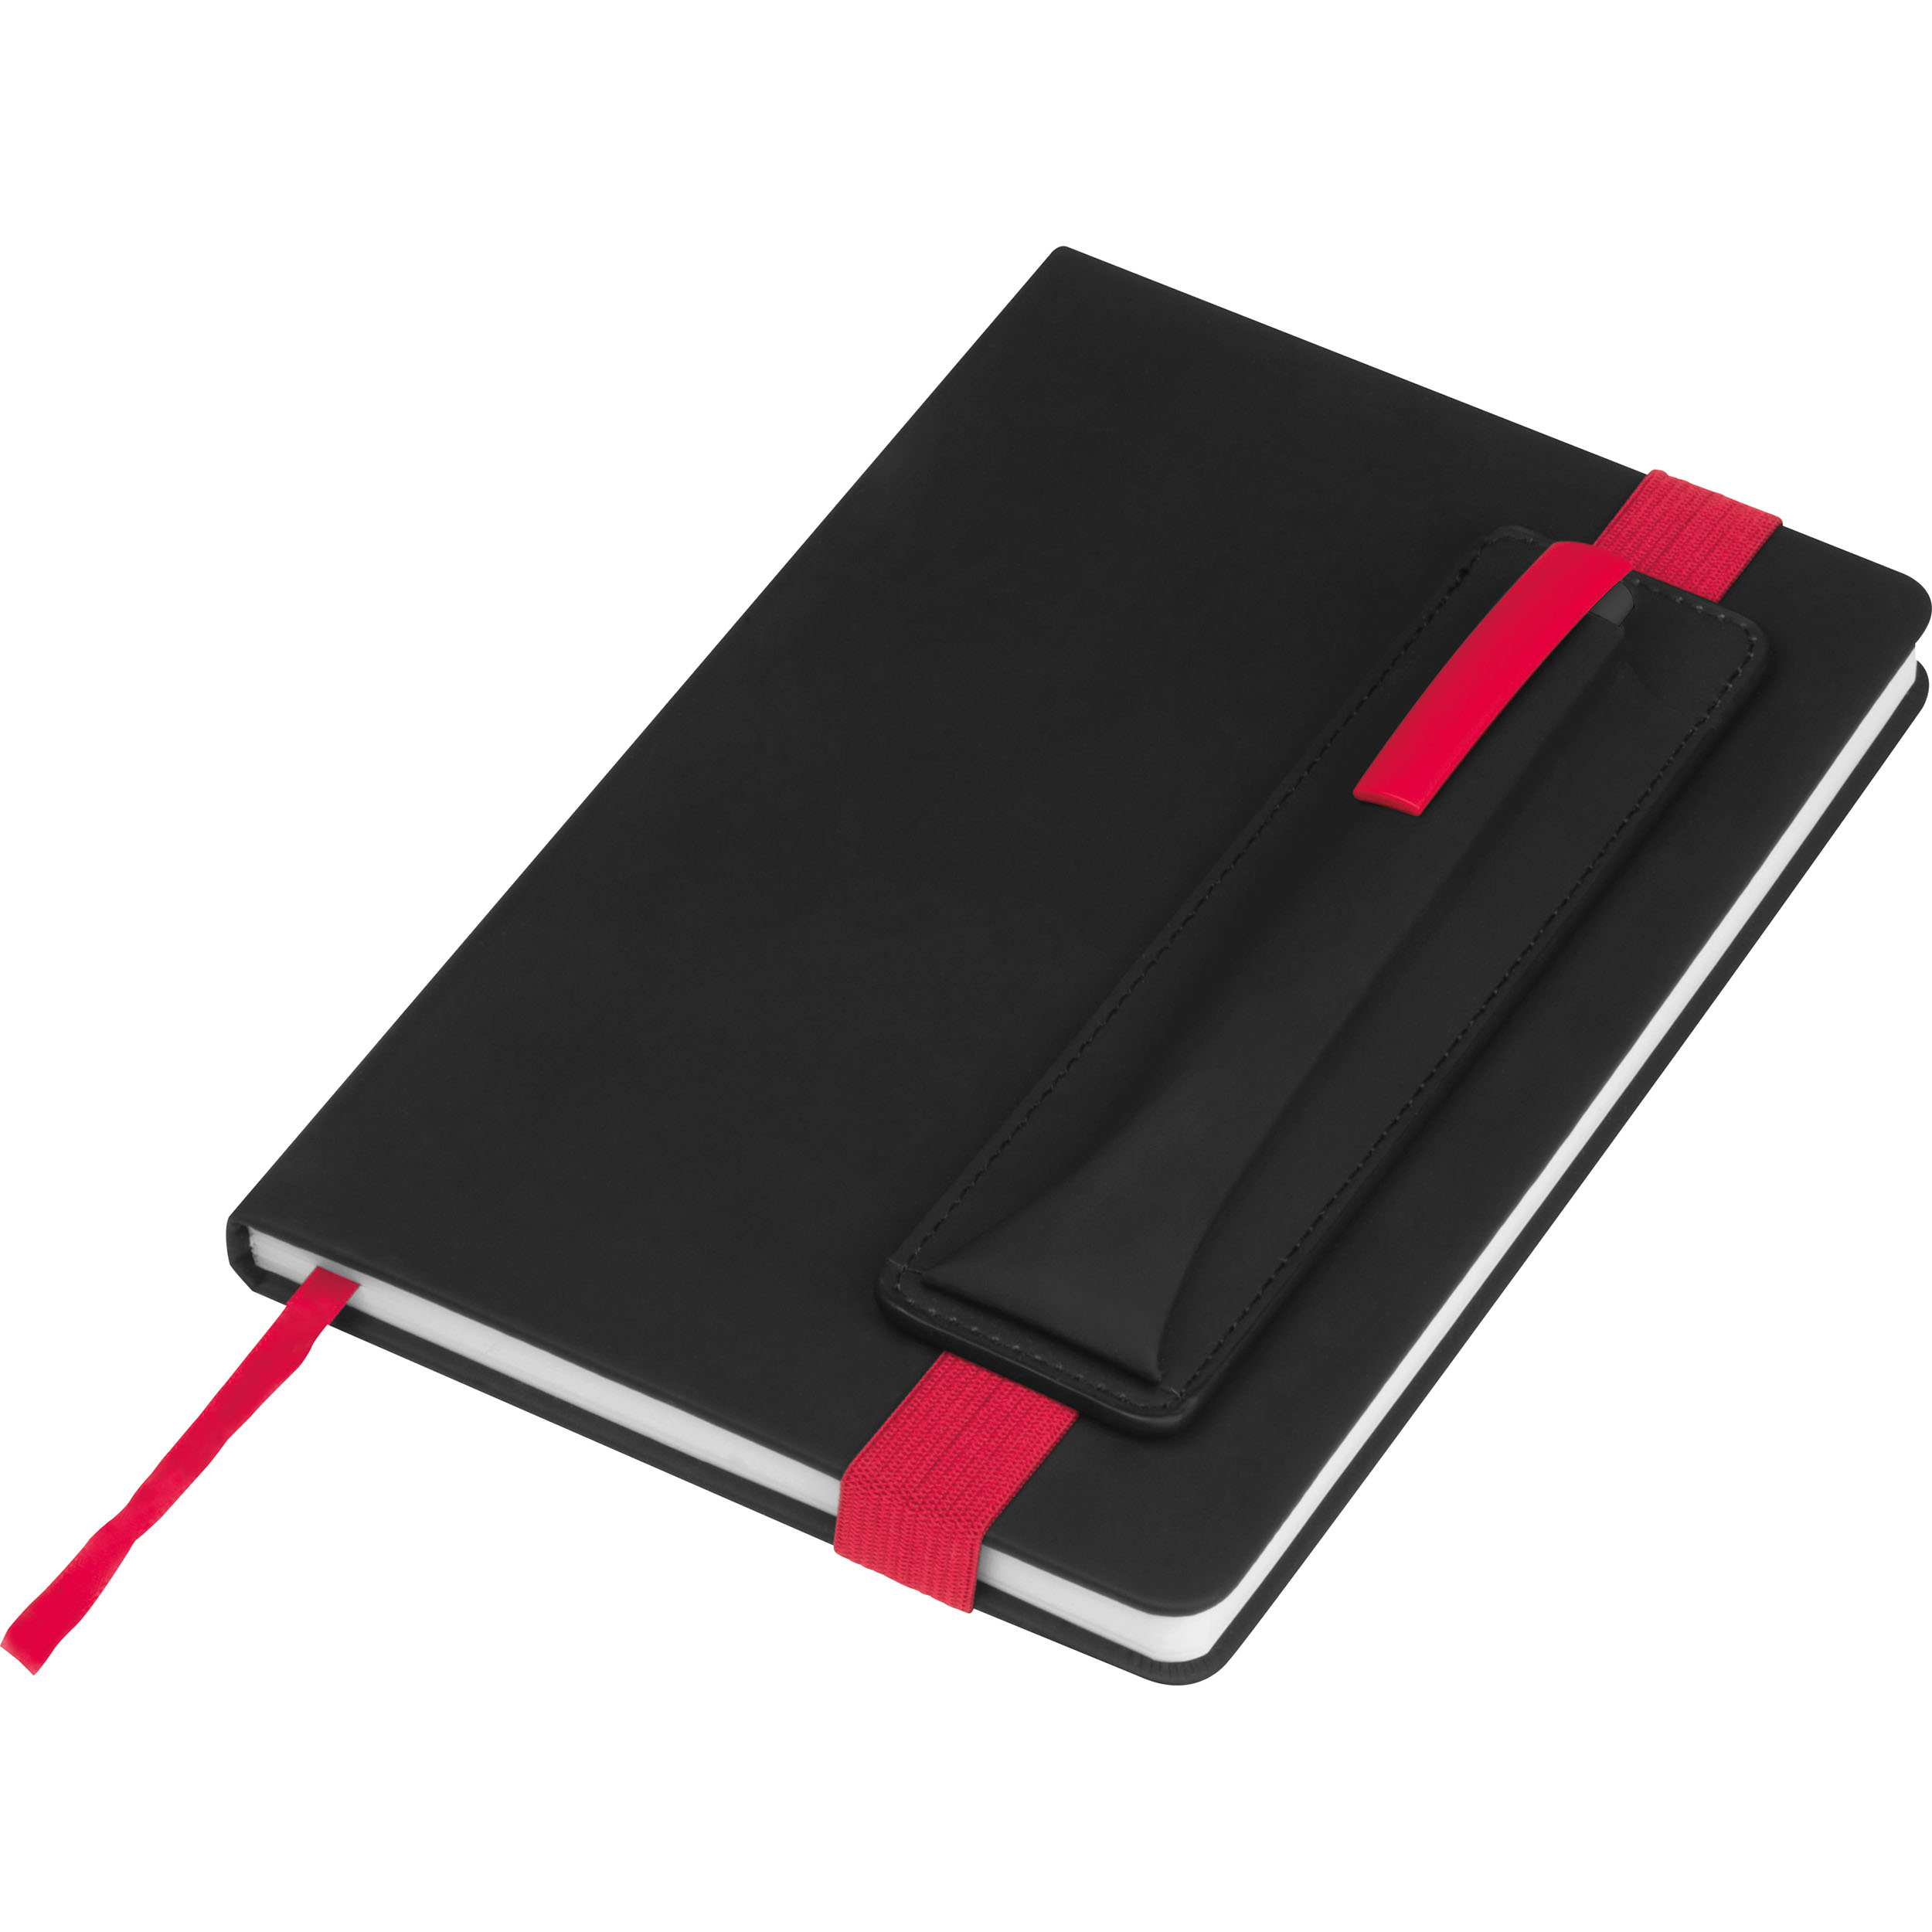 Notizbuch mit farbigen Applikationen